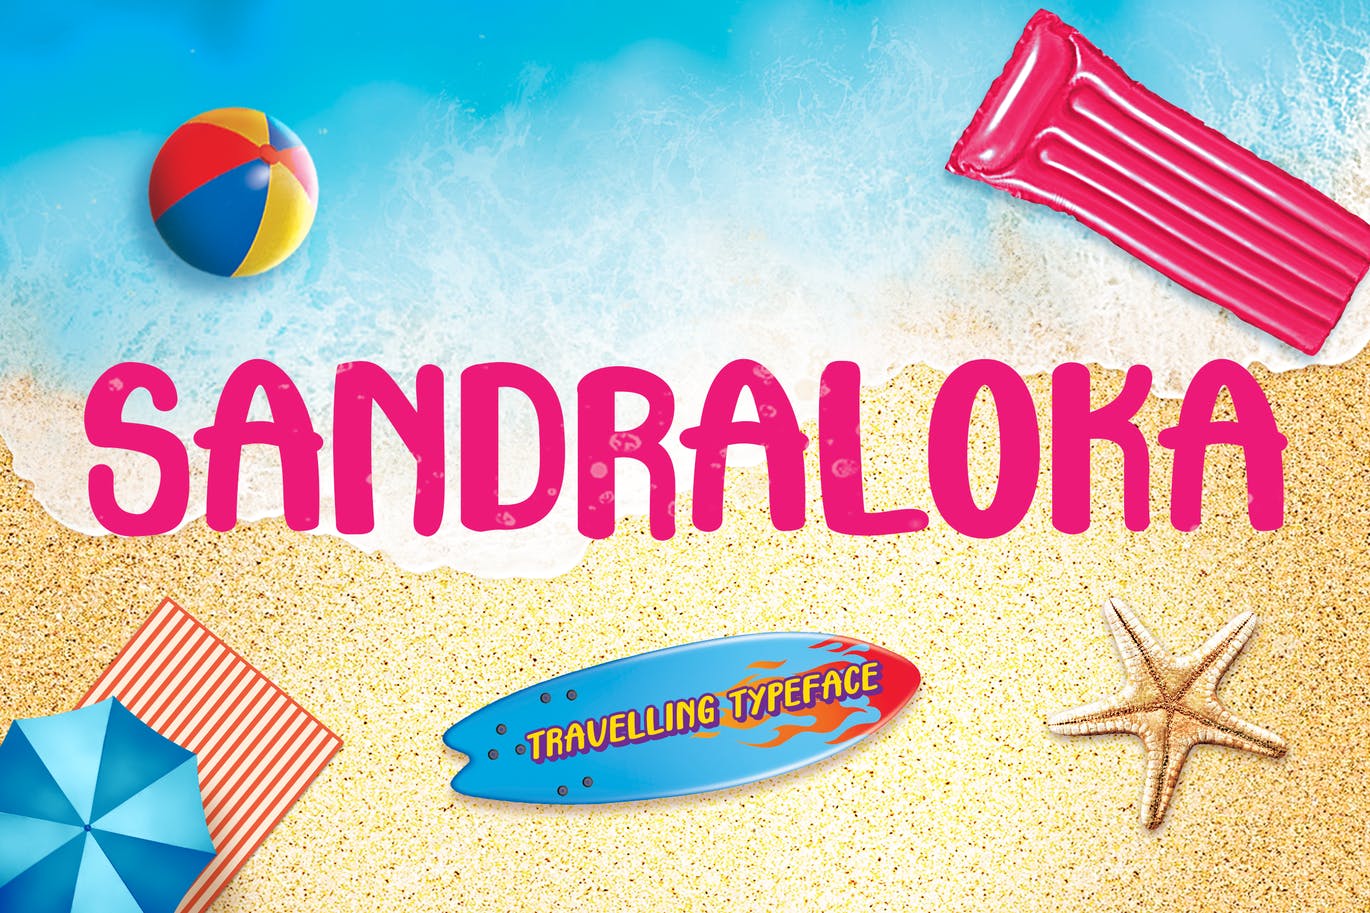 旅行儿童无衬线字体素材 Sandraloka – Travelling Kids Font 设计素材 第1张